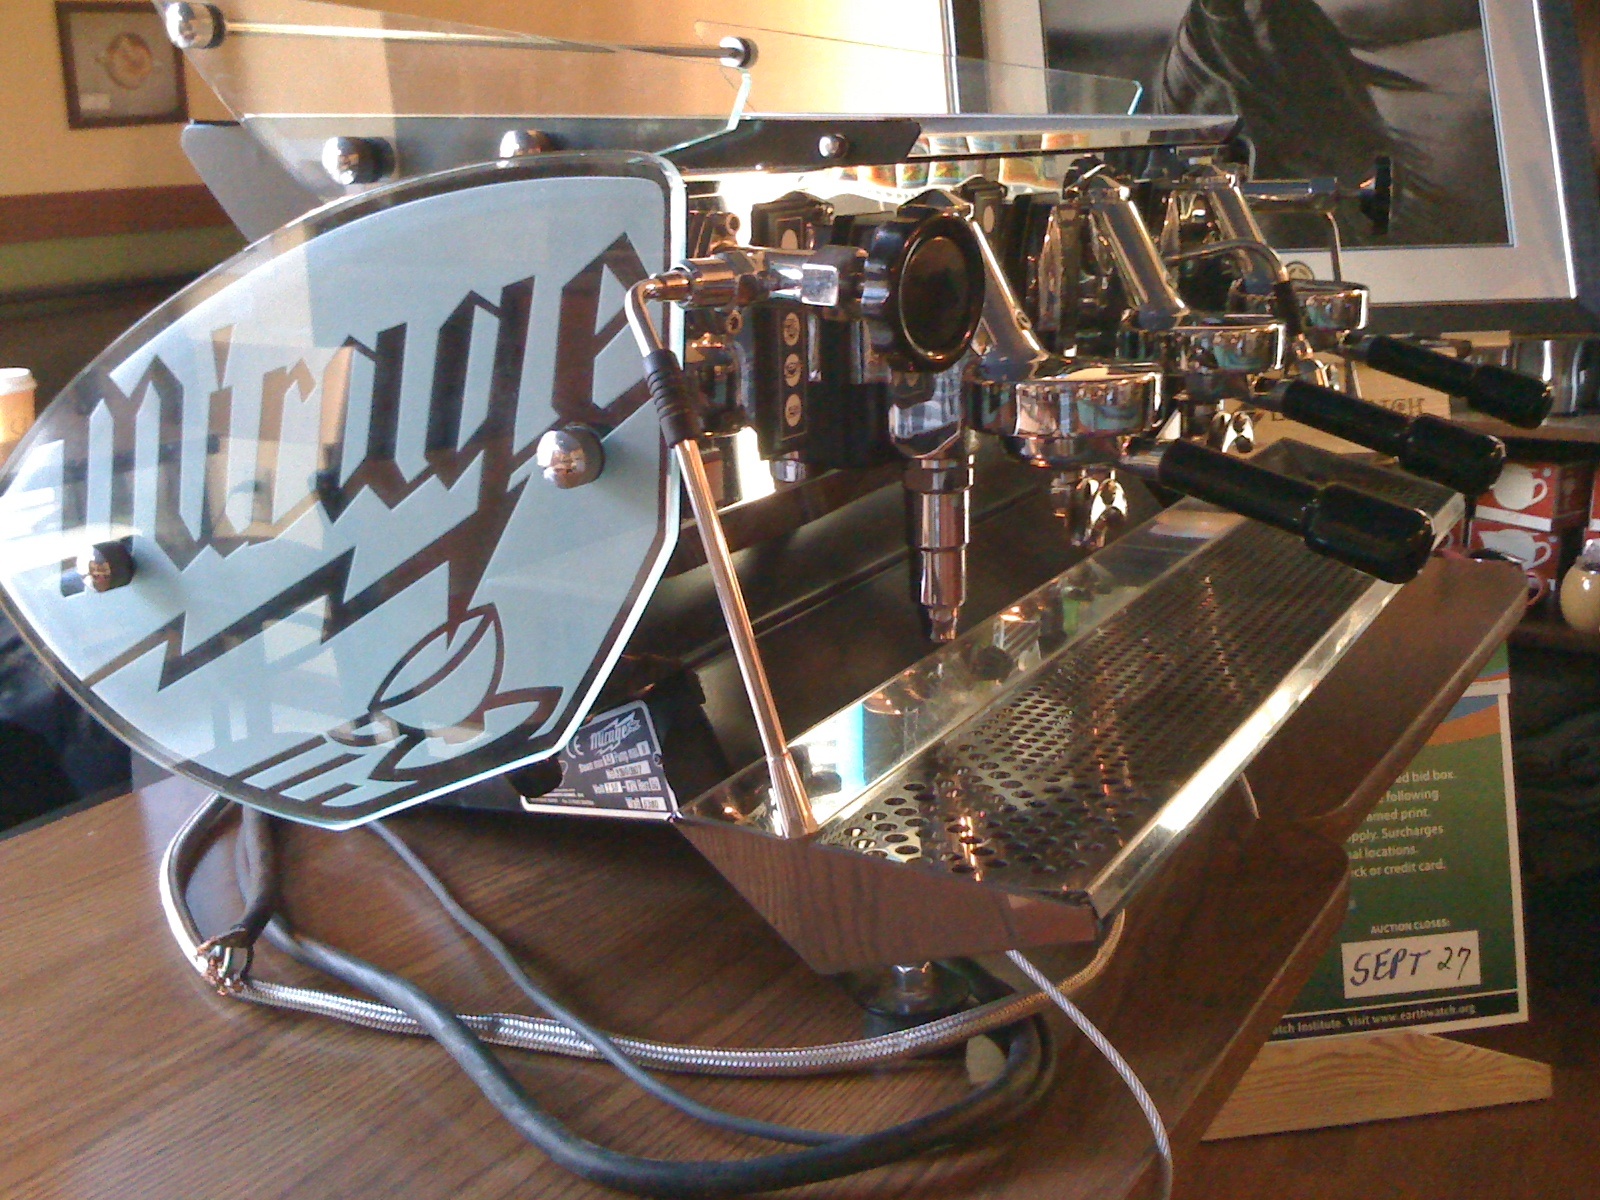 A beautiful espresso machine